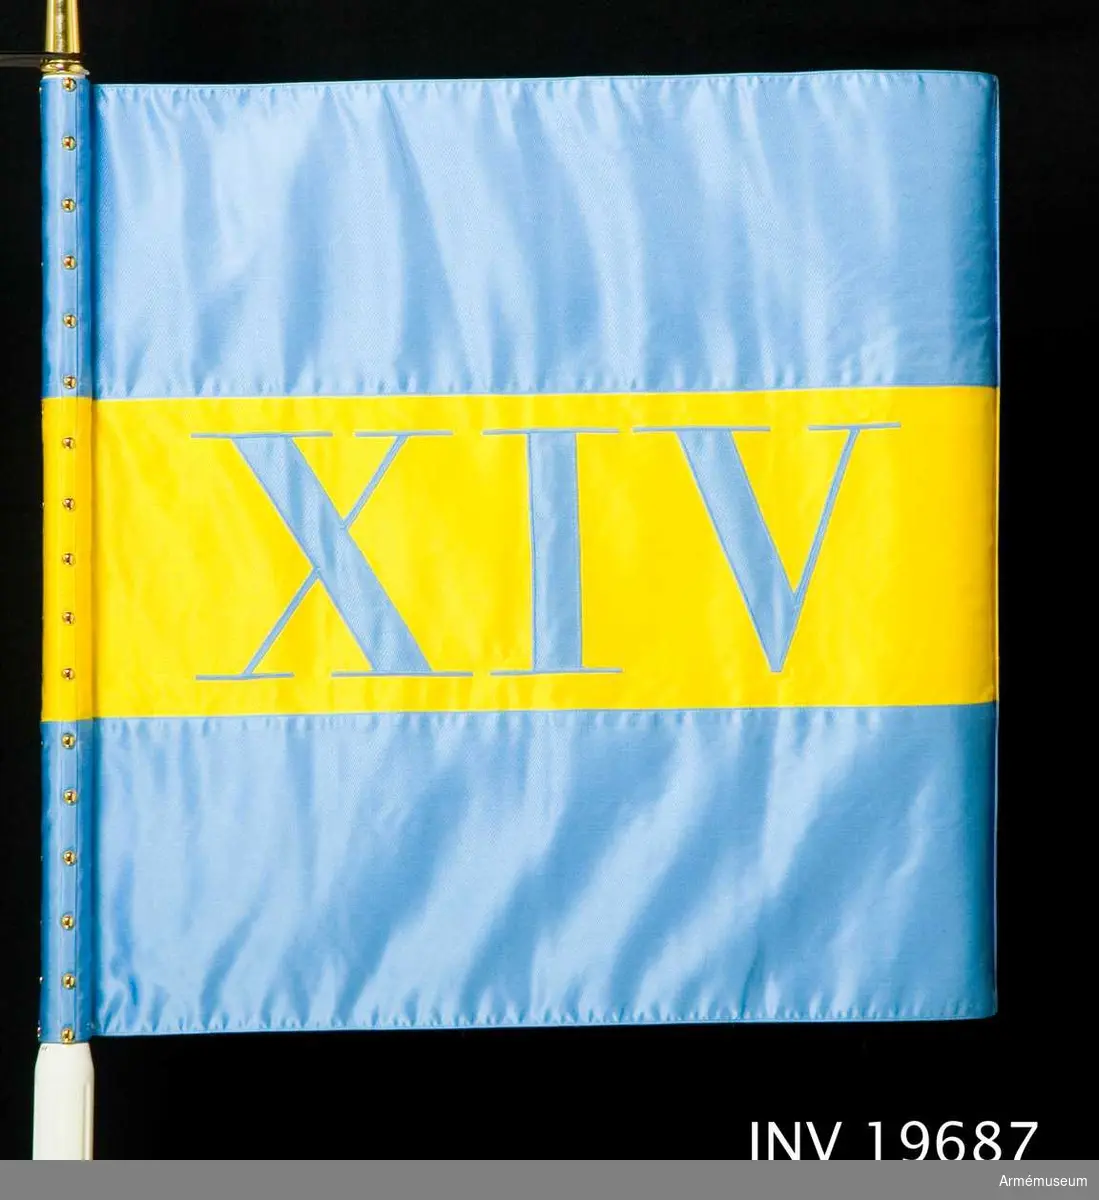 Maskinsytt och dubbelsidigt. Det har tre stycken 220 mm breda våder i blått, gult, blått. I mitten av det gula fältet finns de romerska siffrorna XIV.